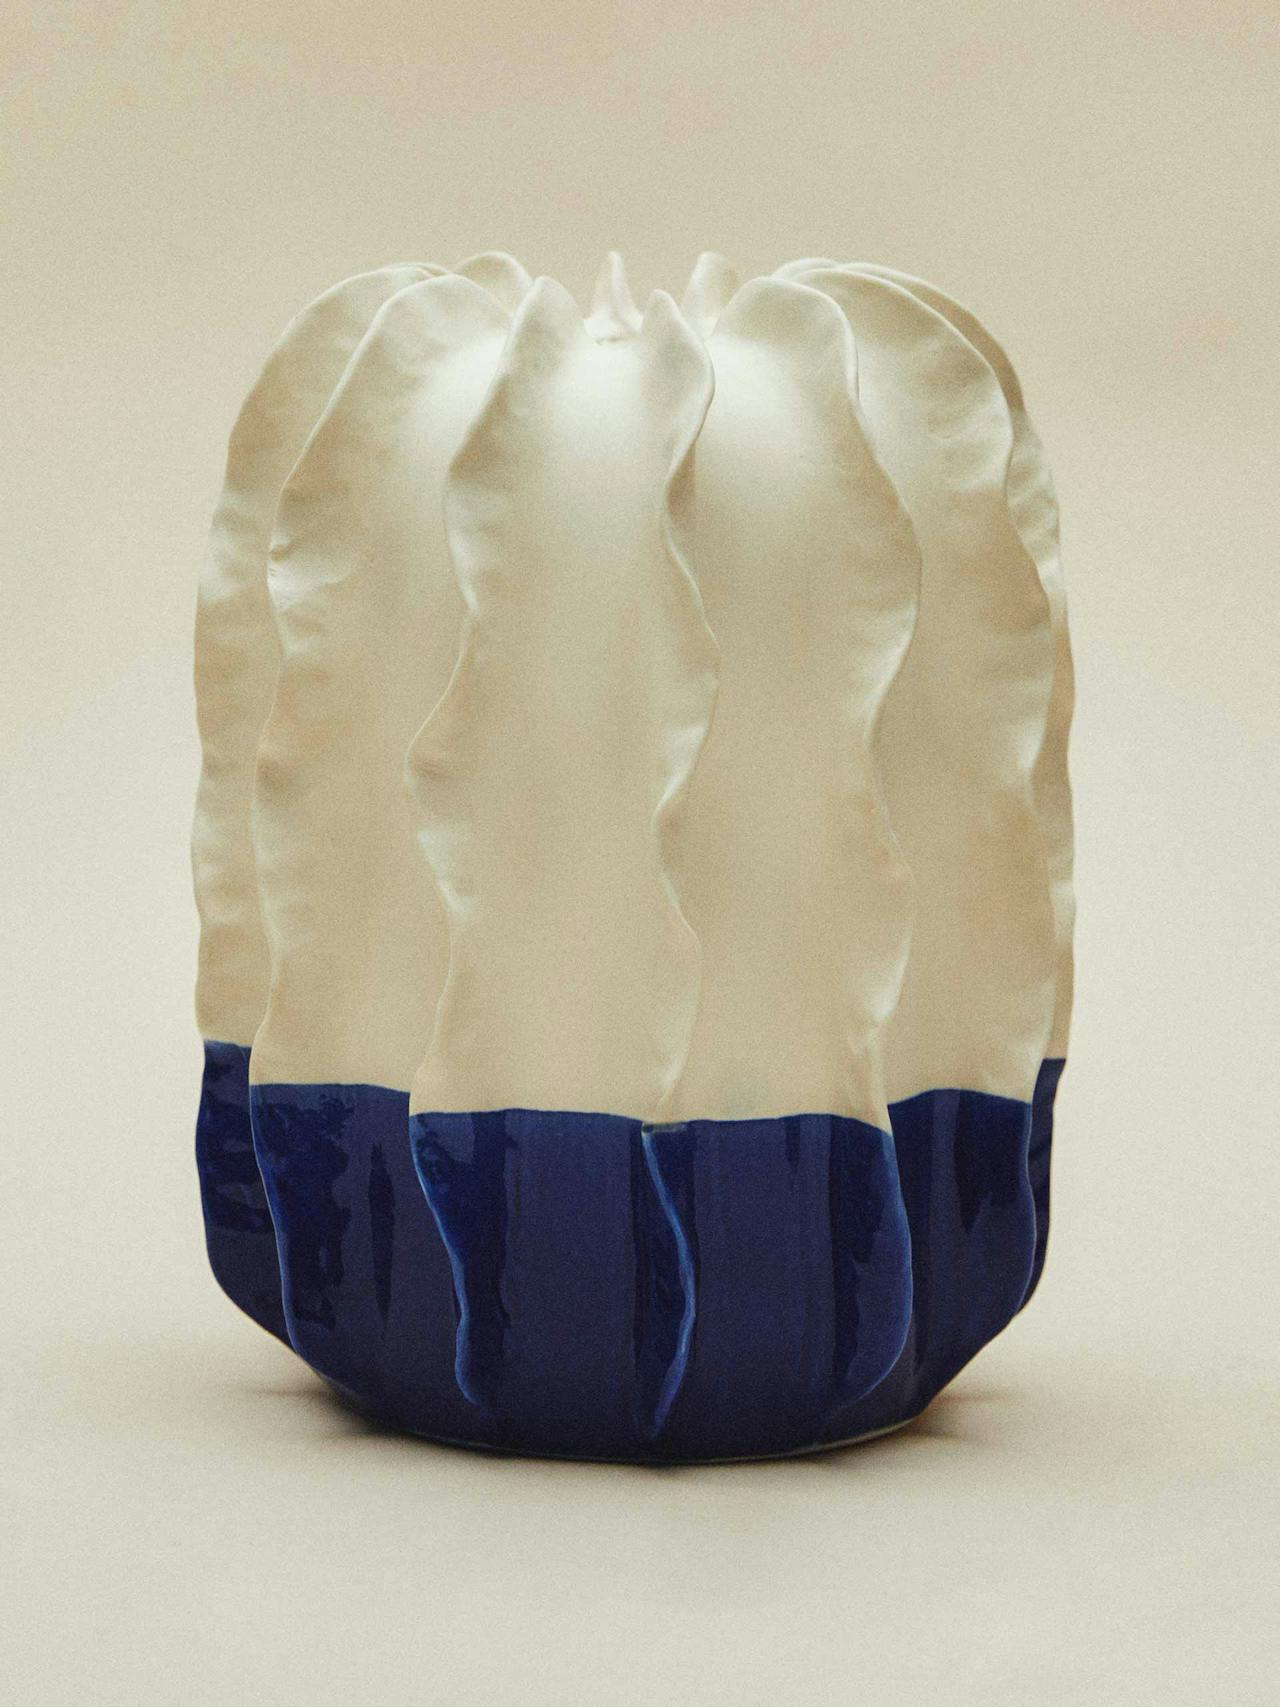 Textured wavy ceramic vase